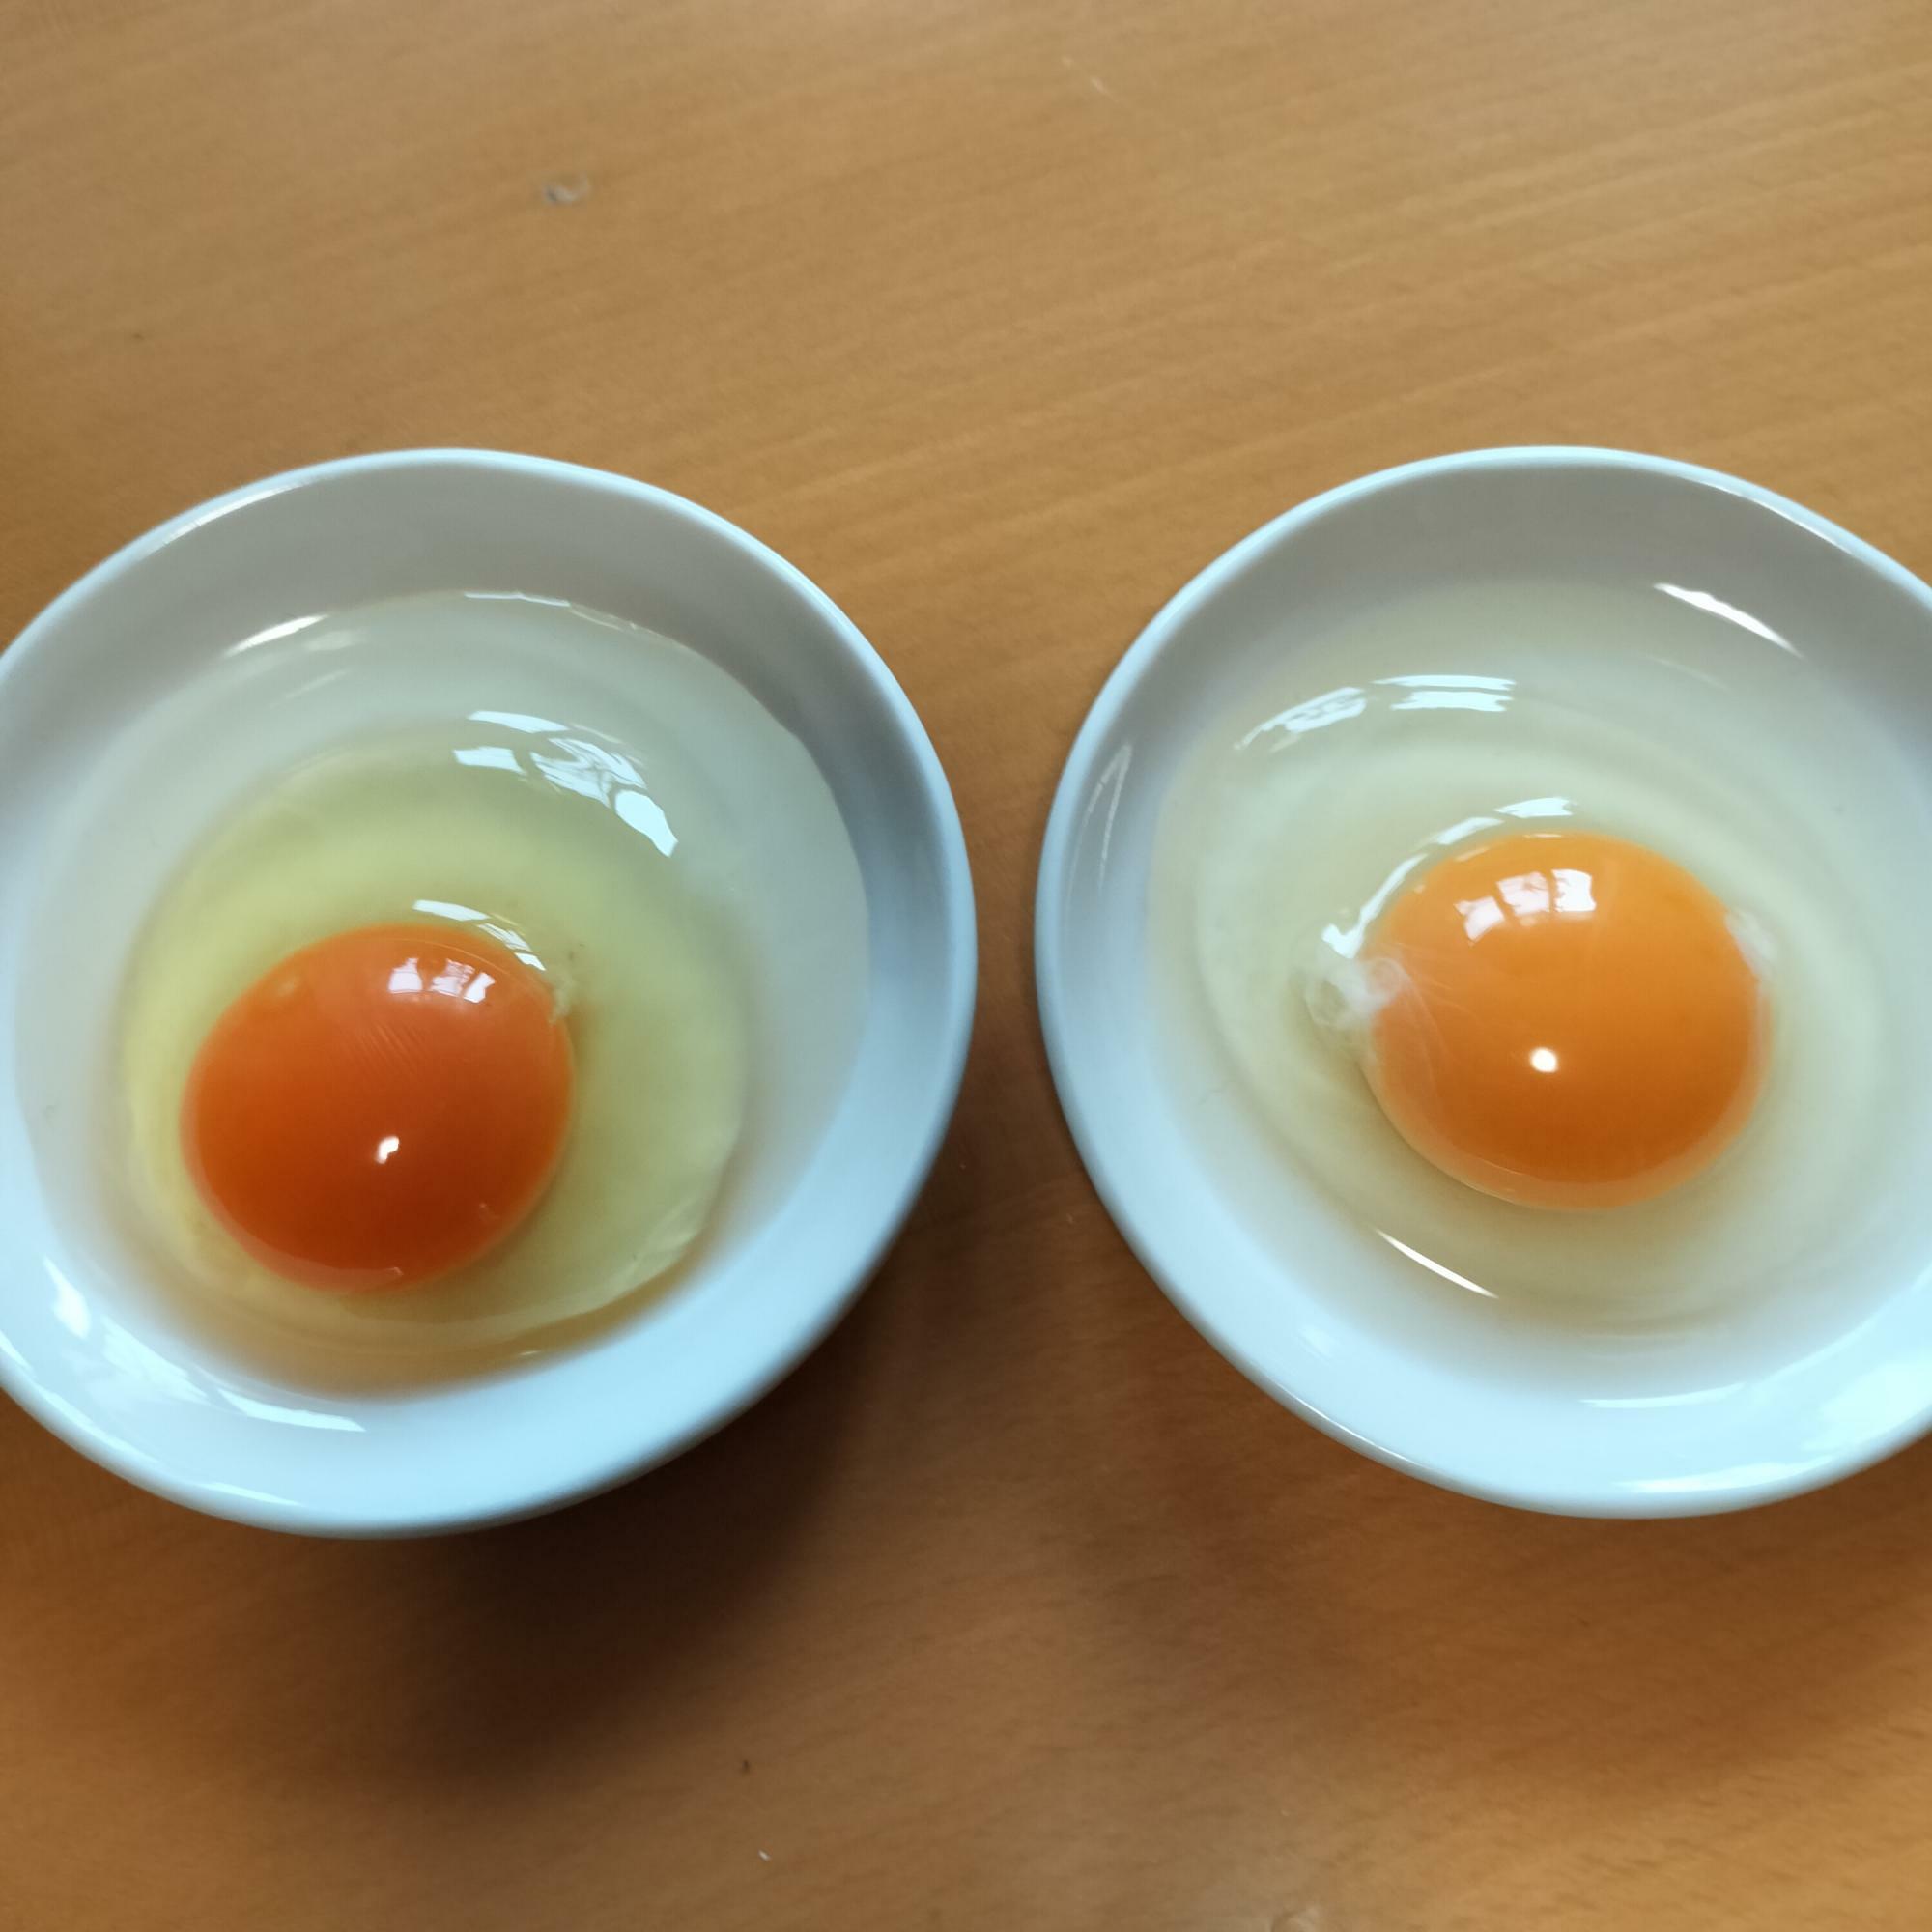 左がモリモリ卵。右が家にあった卵。黄身の色と白身の厚みが全然違う